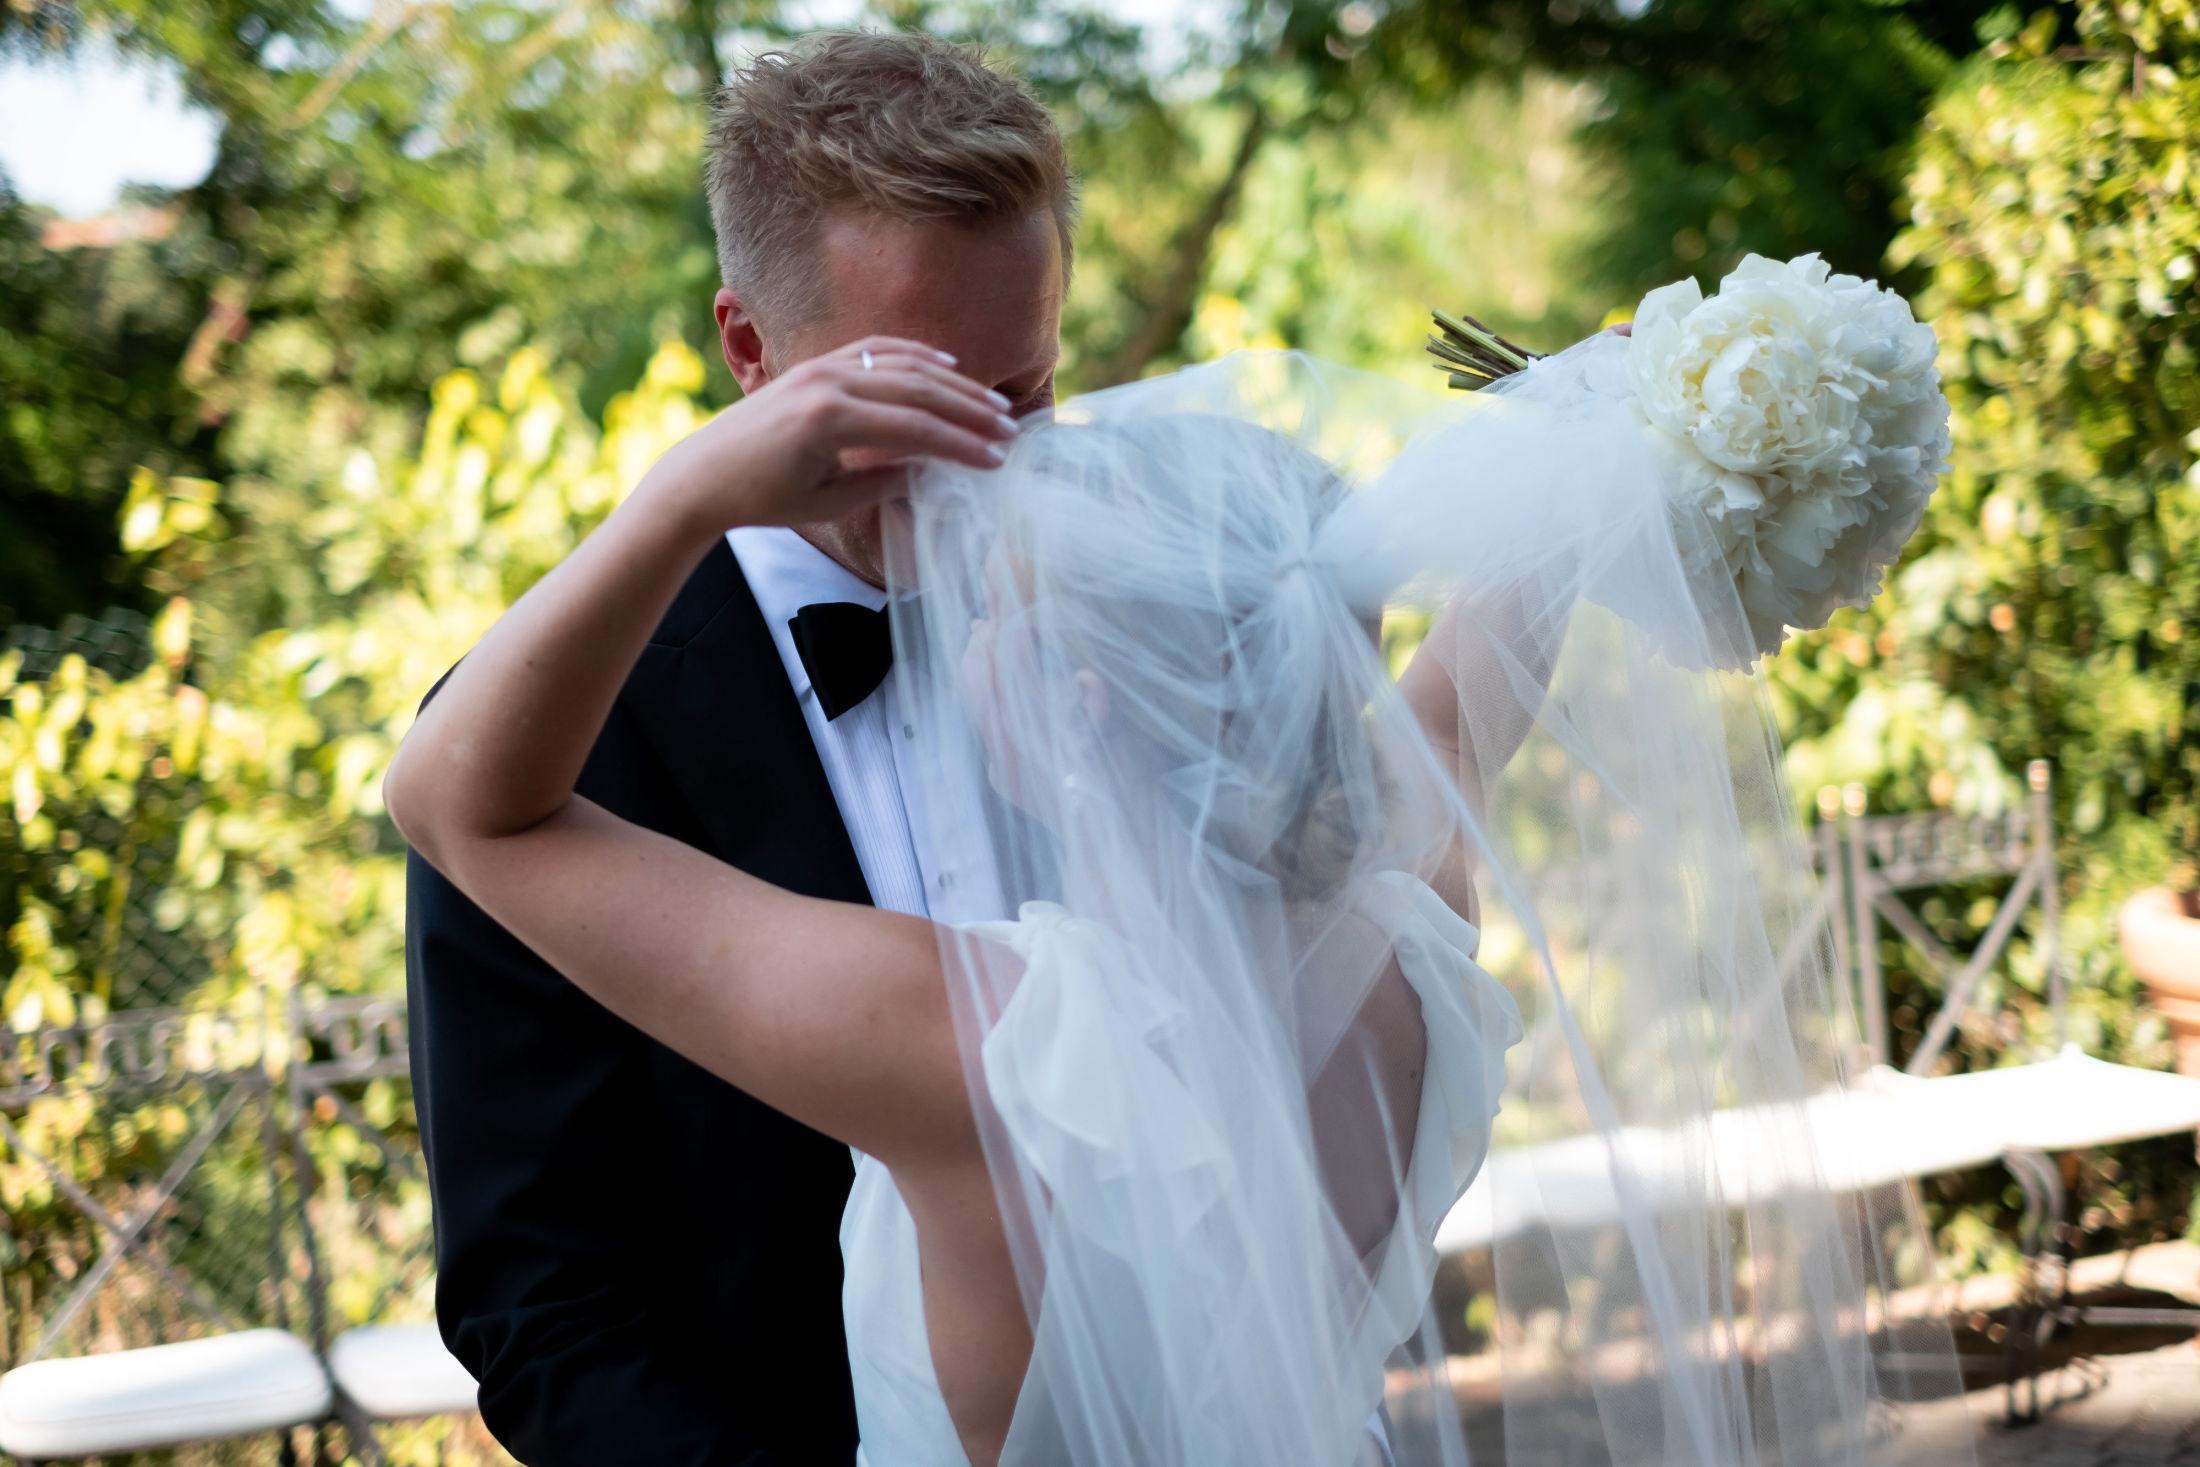 VILLE HA SLØR: Katrine Kvalsund ønsket å ha slør til brudekjolen. Dette ble tilpasset utover dagen. Foto: Privat.